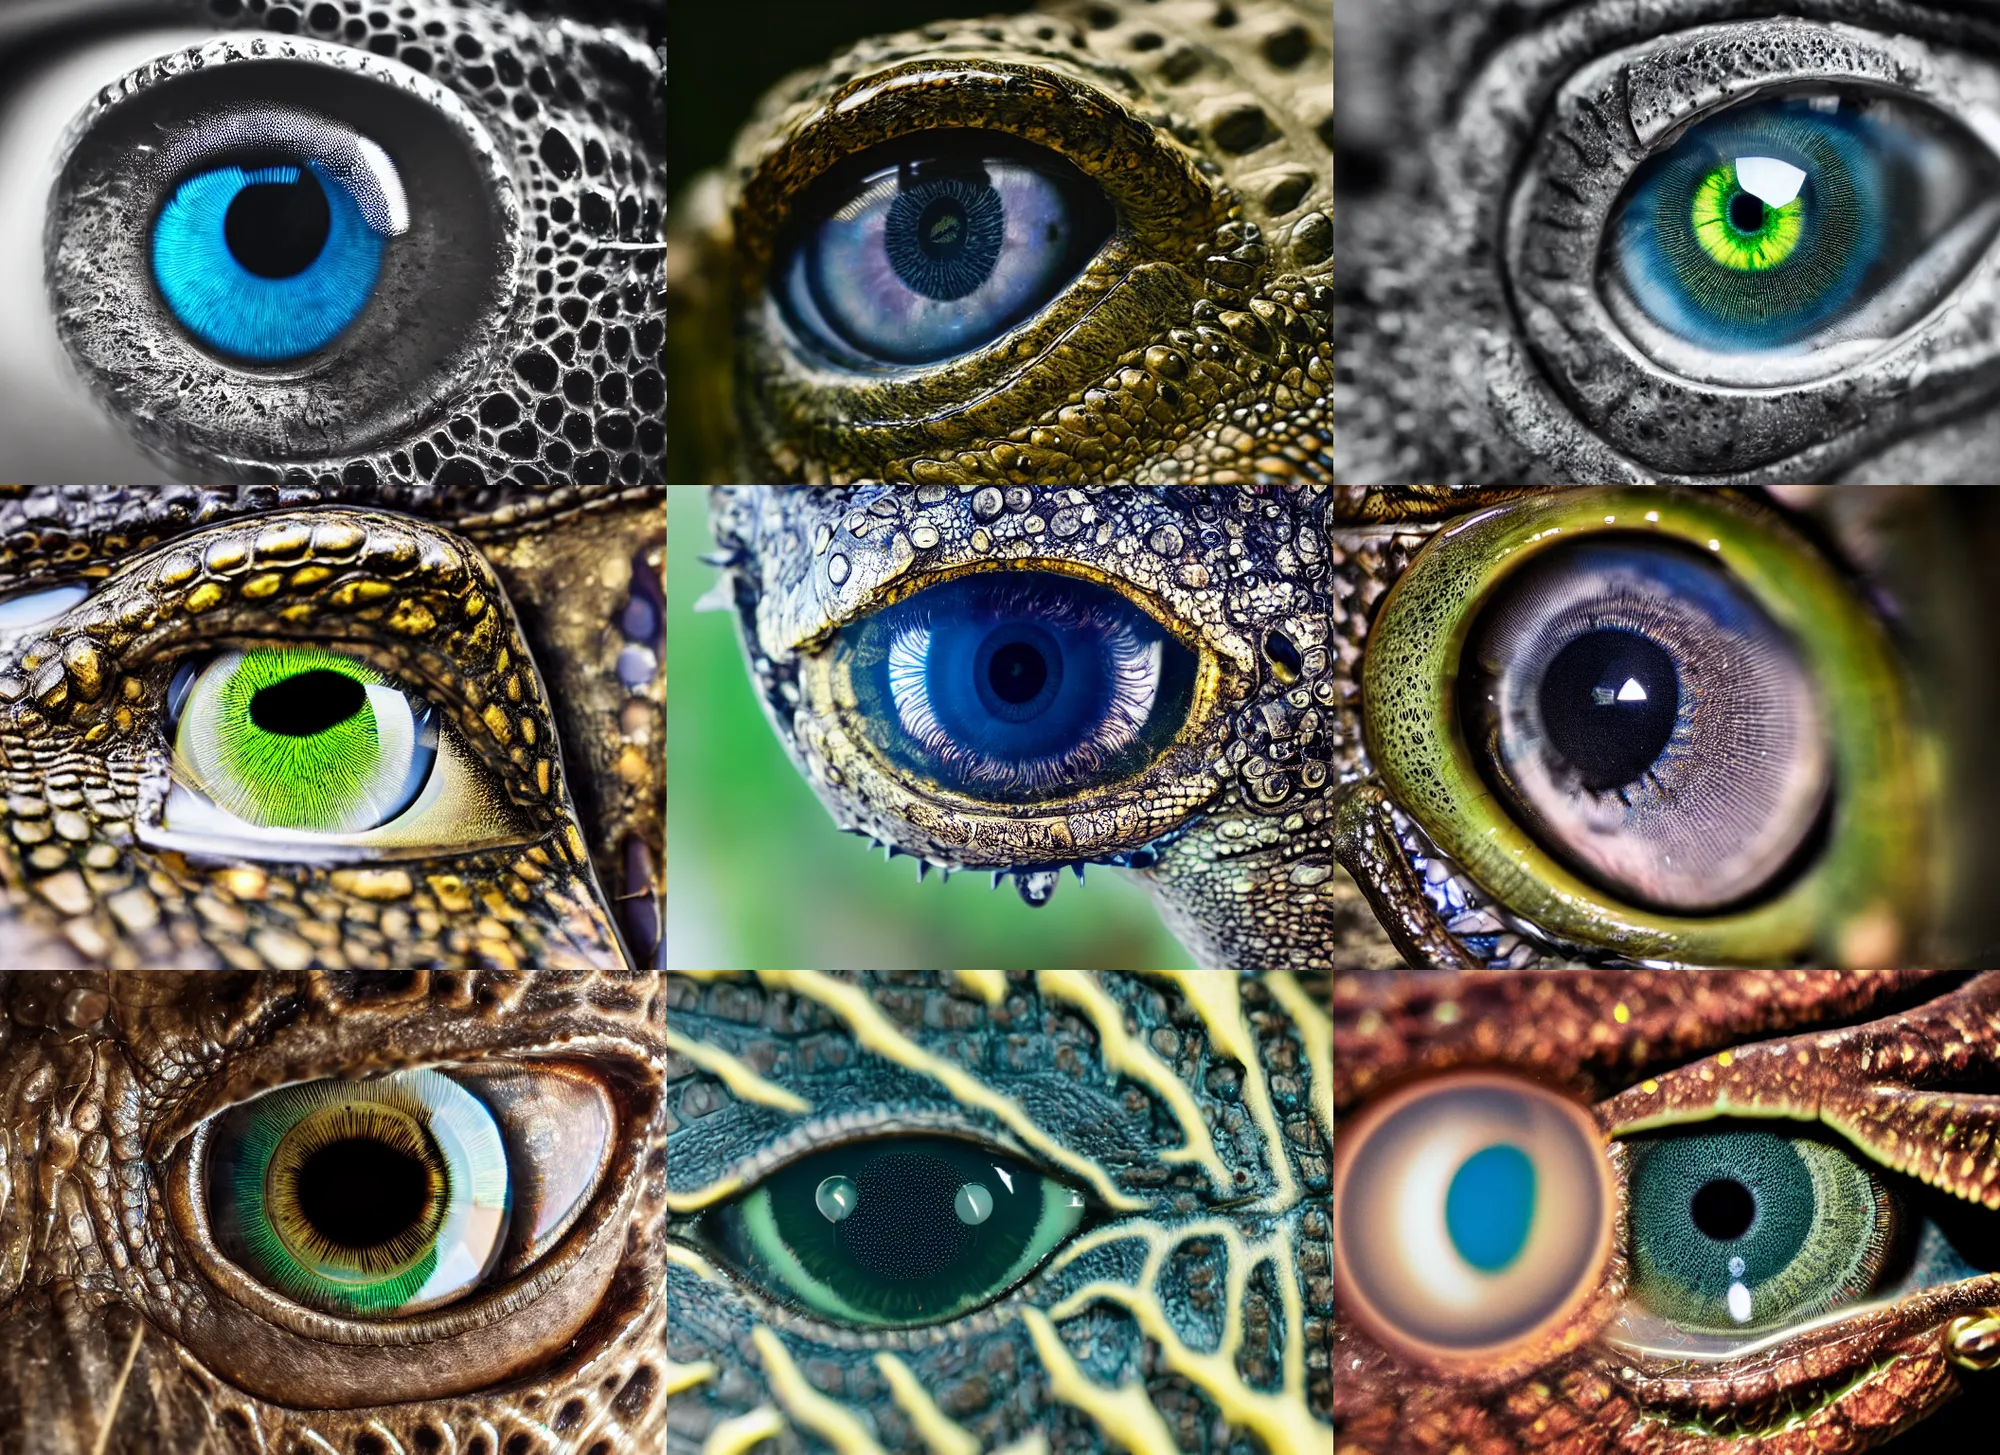 Prompt: macro photography of a cybernetic enhanced crocodile eye, reflective iris